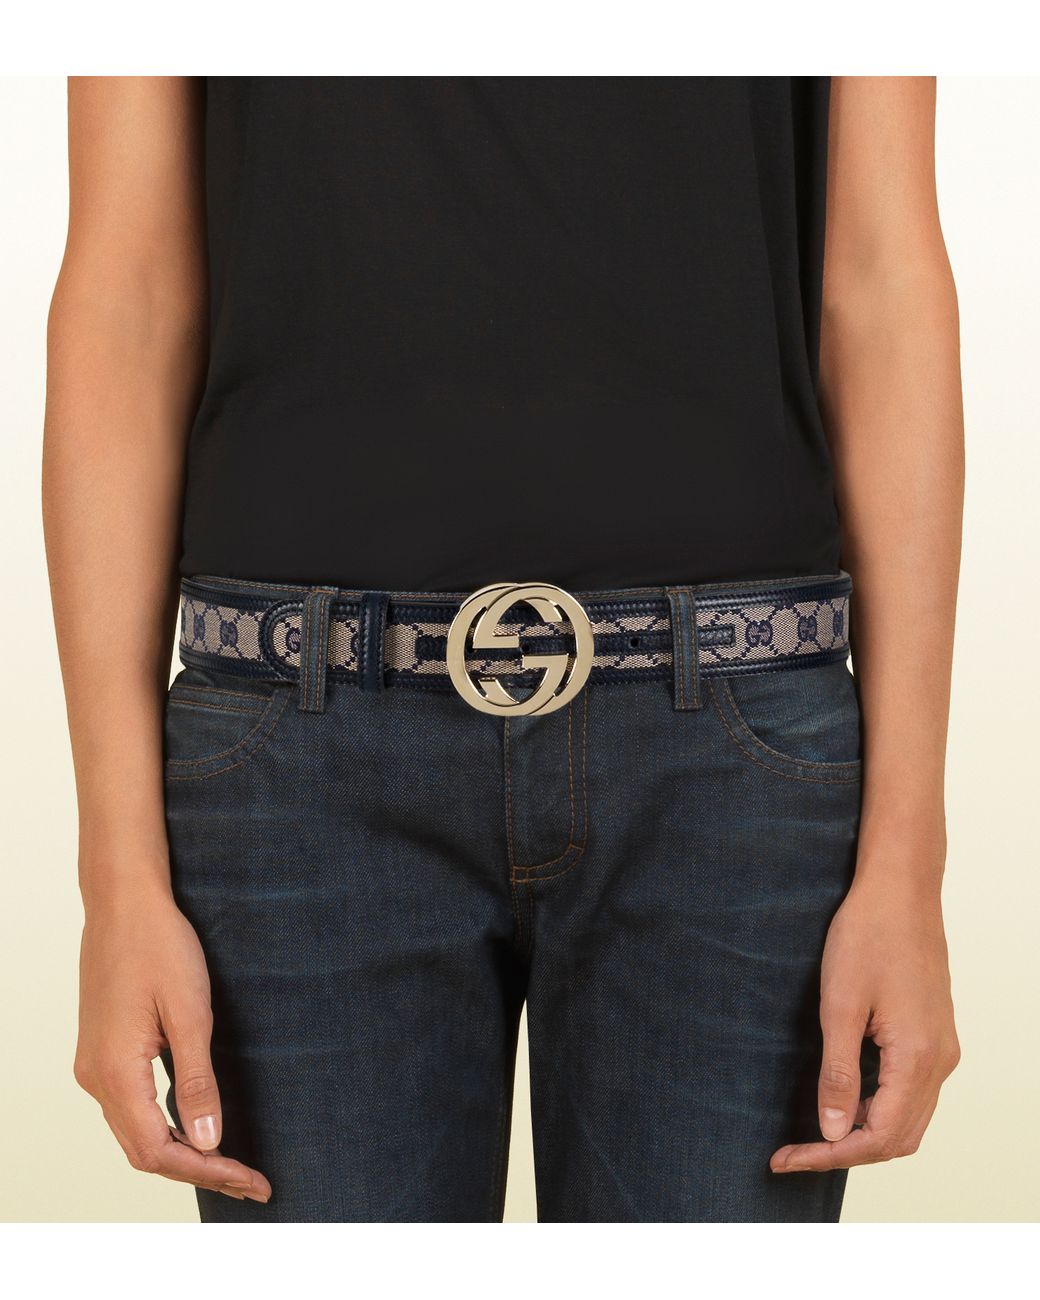 Gucci Original Gg Canvas Belt With Interlocking G Buckle in Blue | Lyst